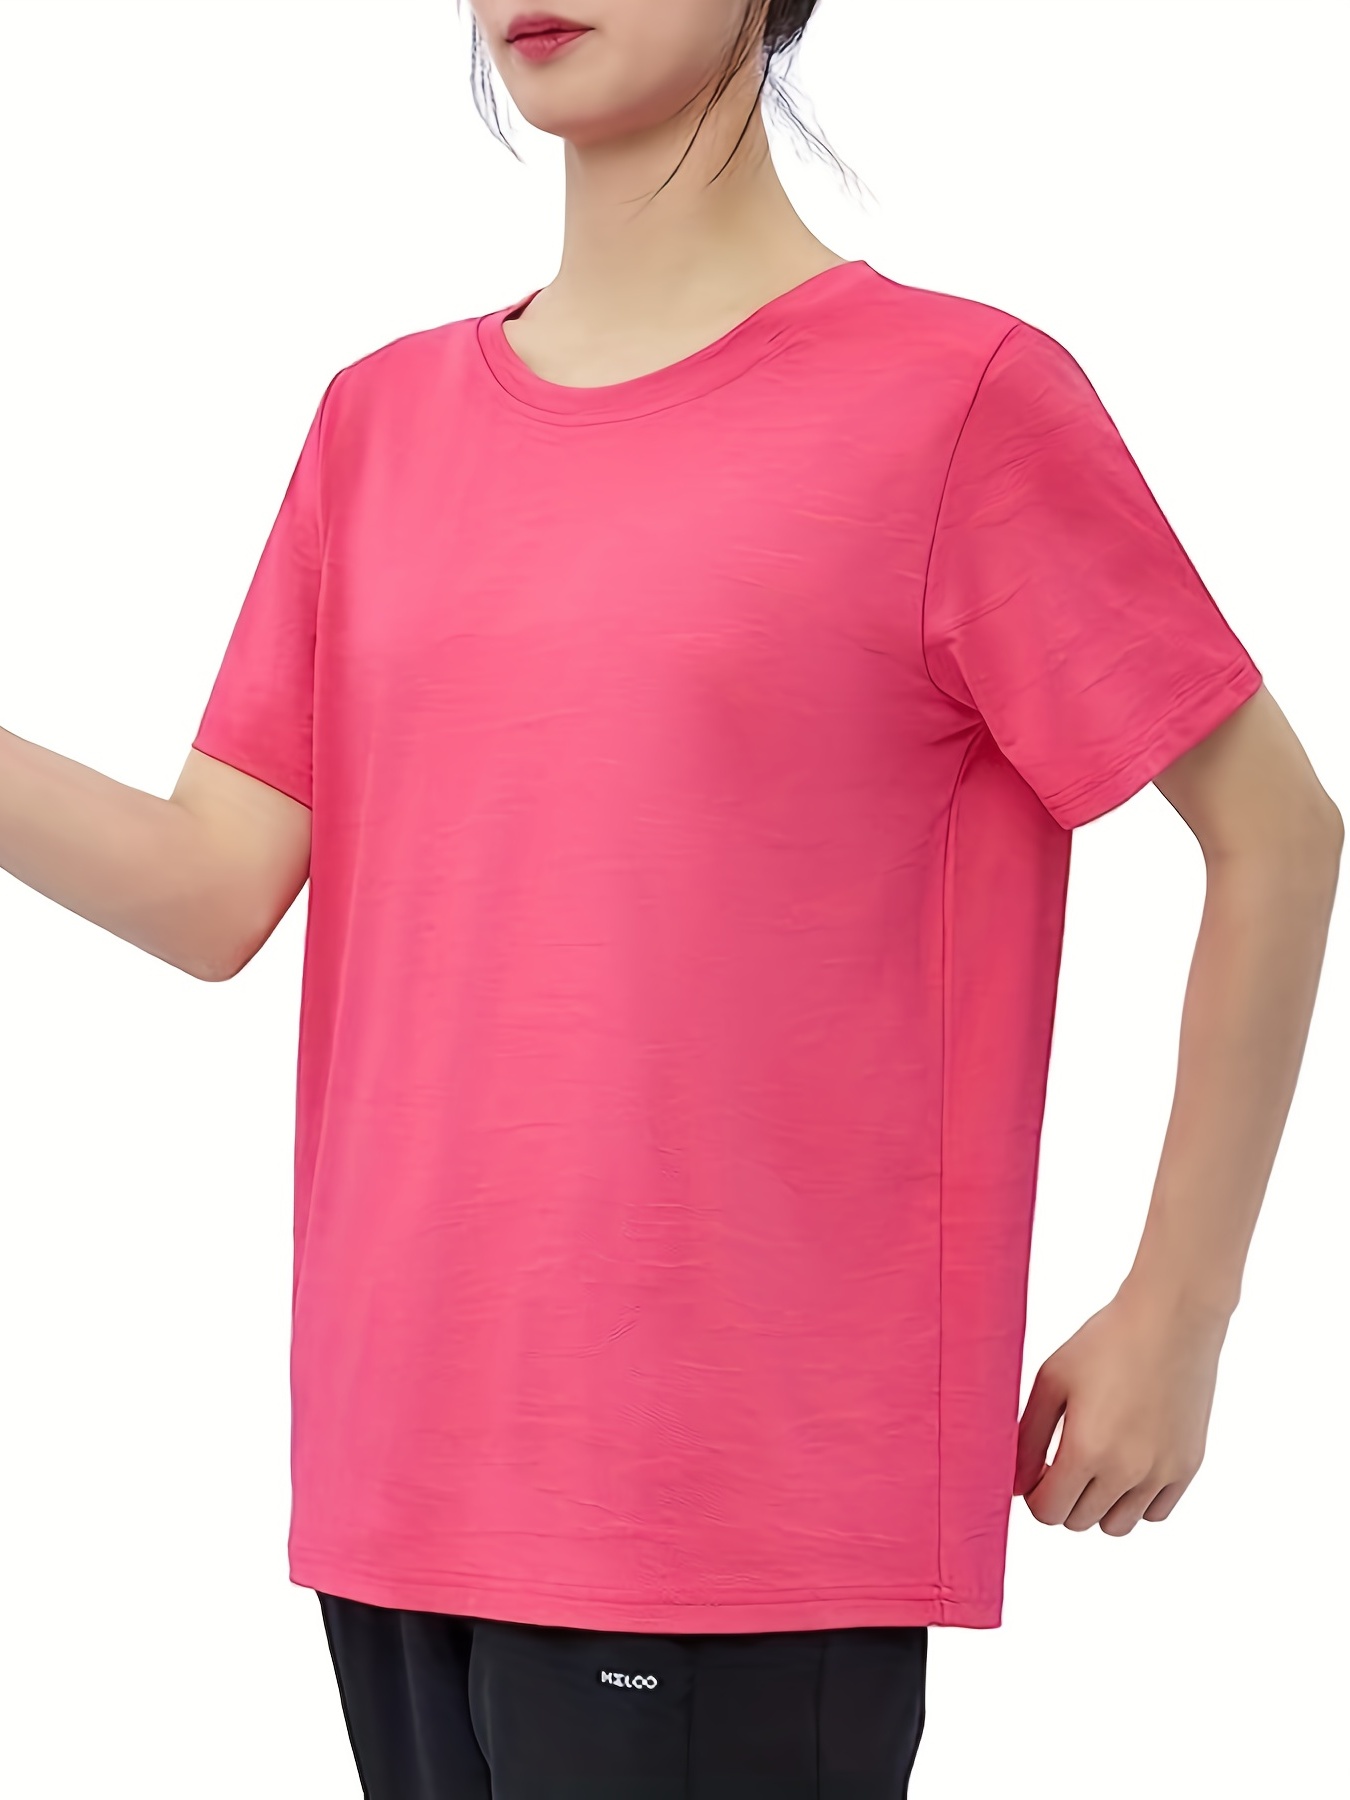 Camiseta deporte de mujer manga corta con cuello a pico WORKTEAM S7525